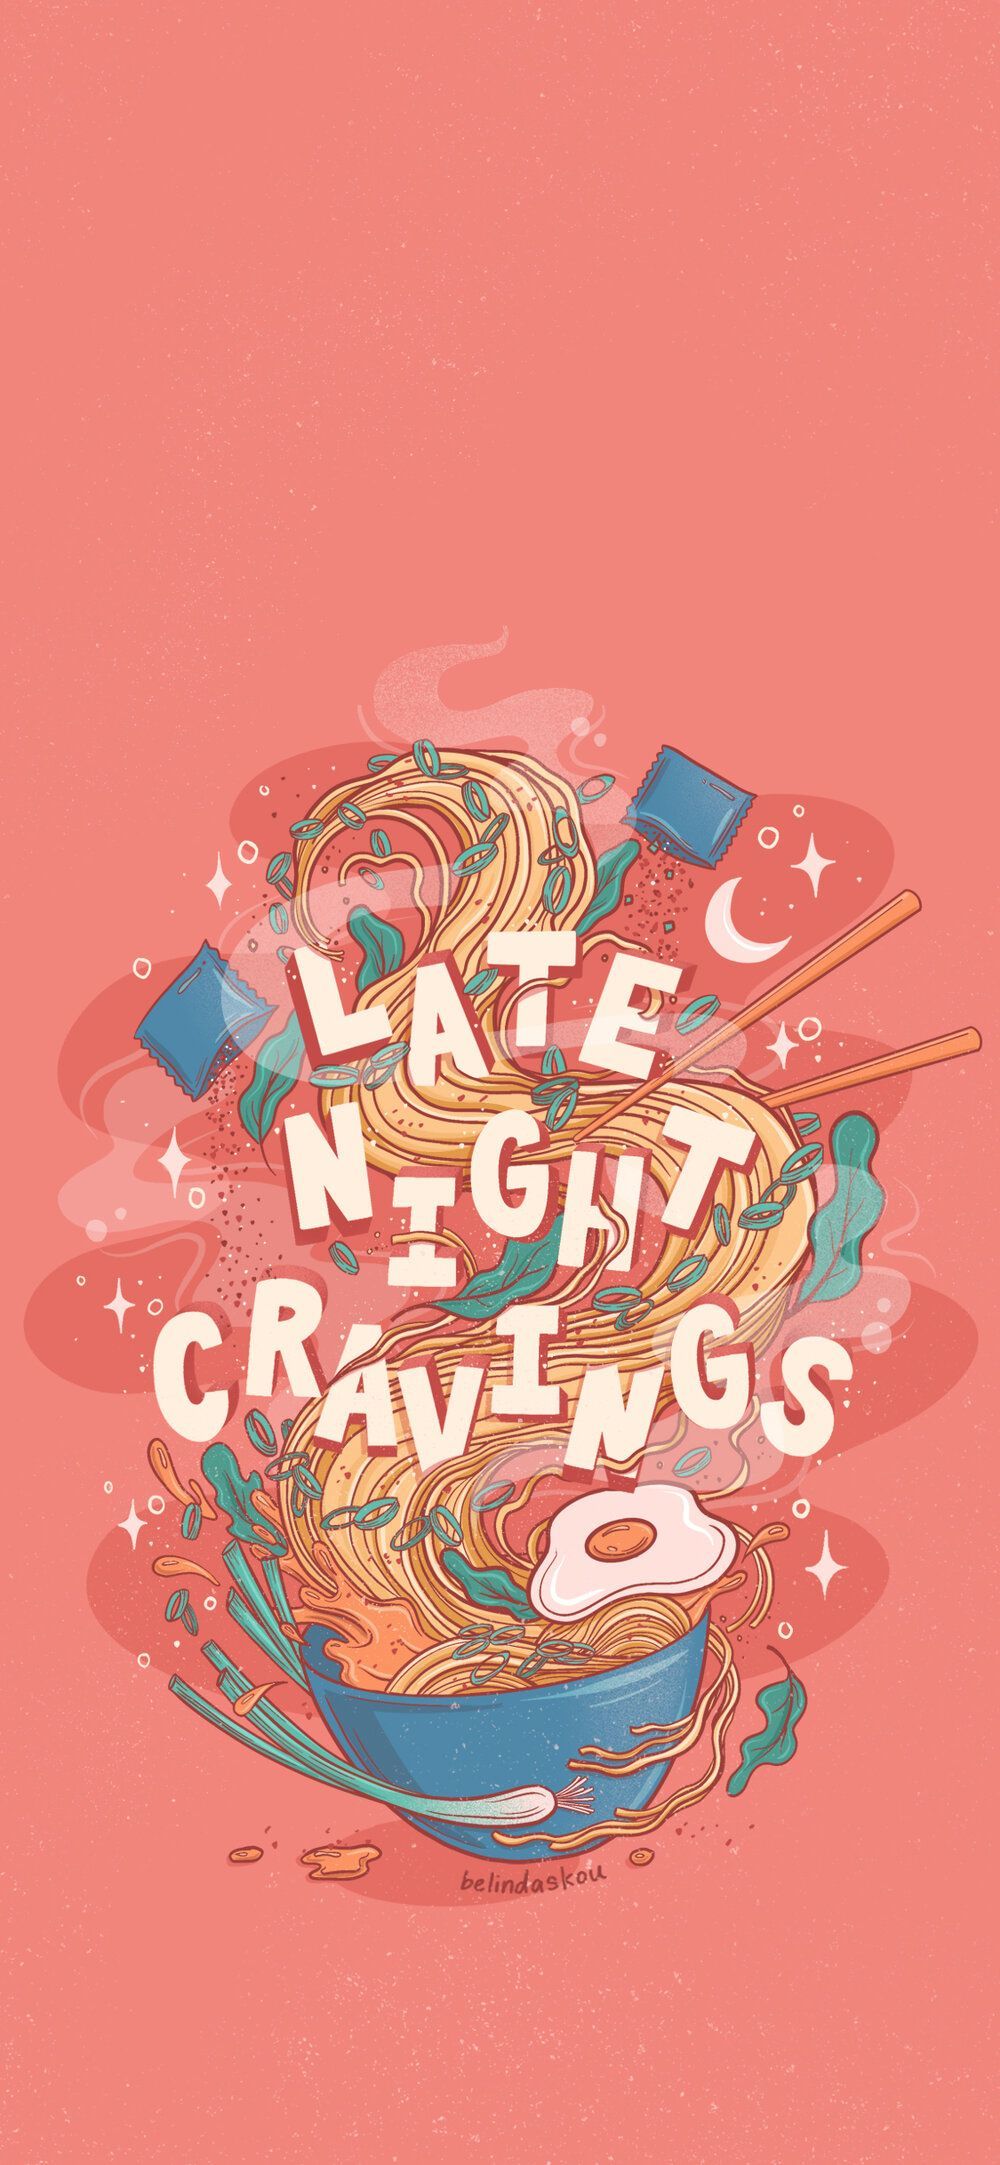 Late Night Cravings ramen phone wallpaper. Anime wallpaper phone, Kawaii phone wallpaper, Cute wallpaper